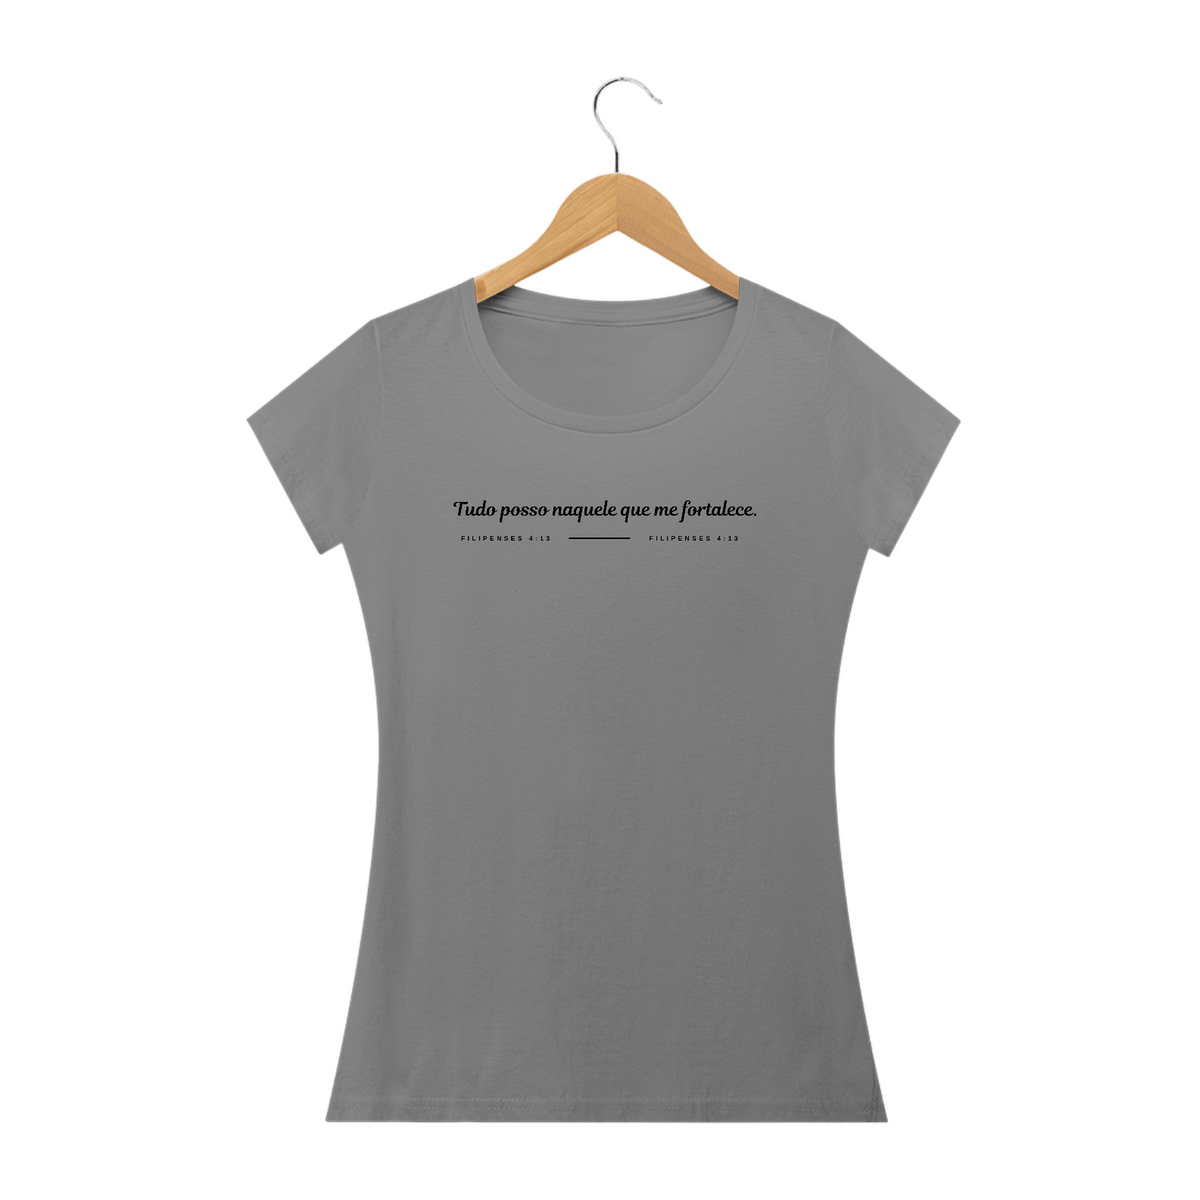 Nome do produto: Camisa Feminina - Tudo Posso naquele que Fortalece